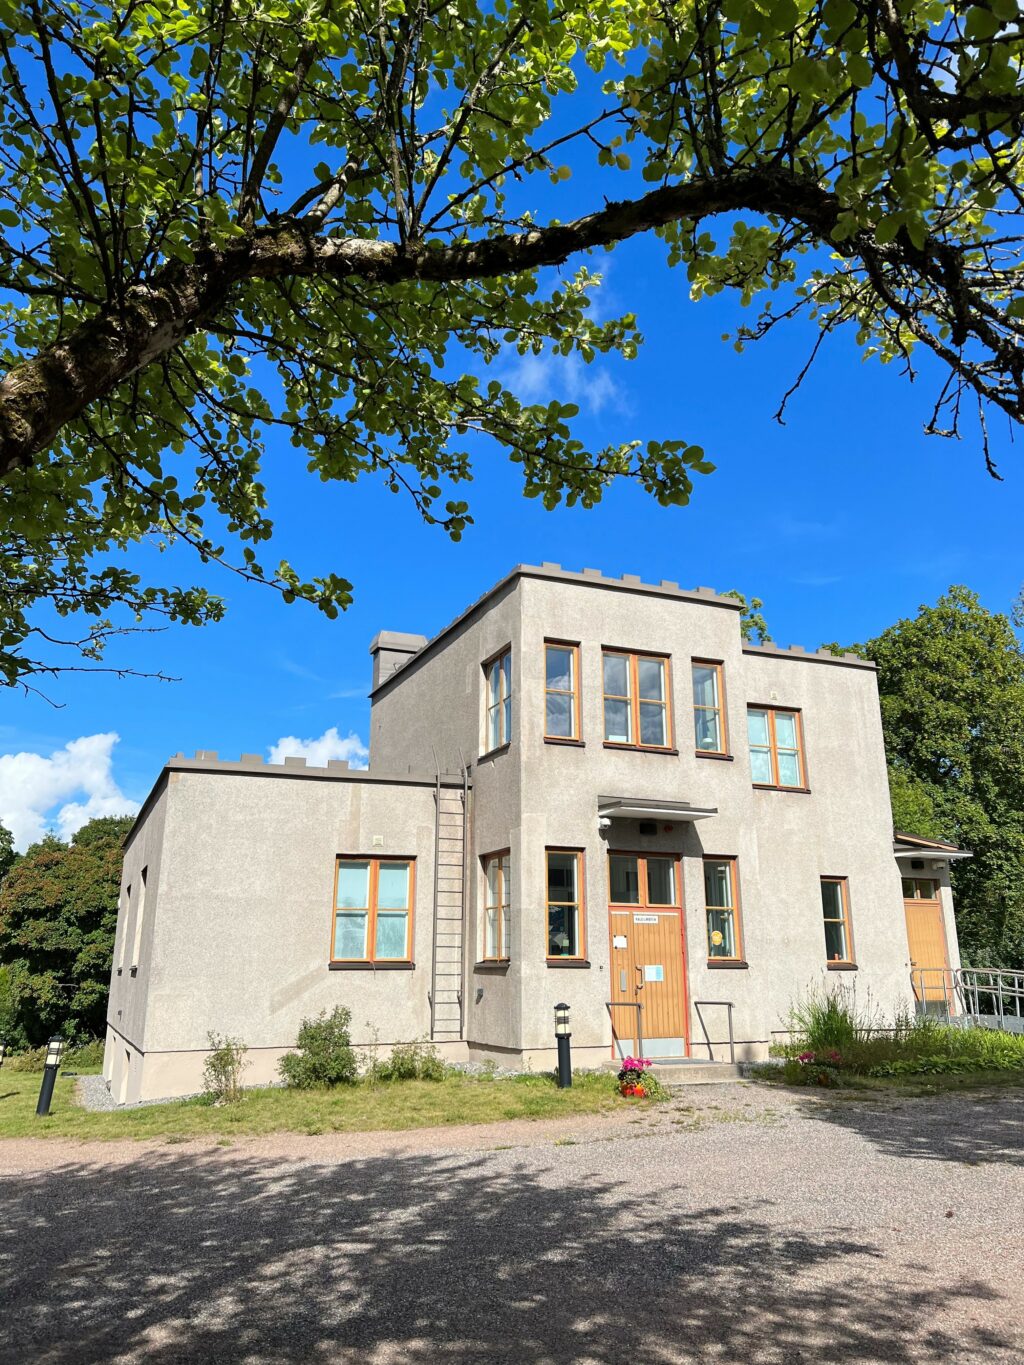 Käsityömuseo Miila sijaitsee Paimion keskustan funkkisrakennuksessa.